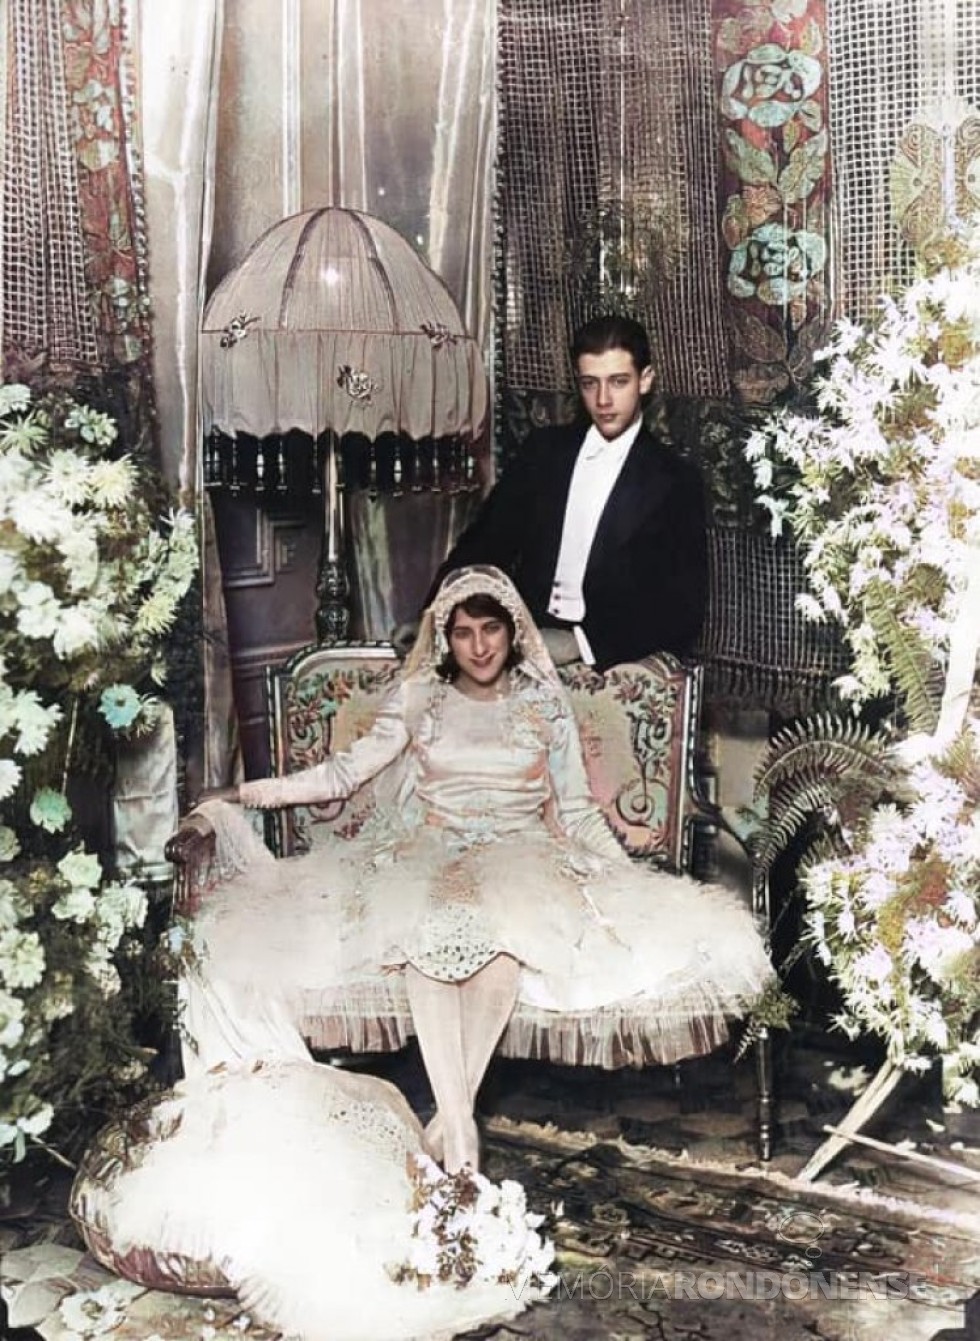 || Noivos Flora Camargo e Bento Munhoz da Rocha Neto, em foto especial de casamento, em setembro de 1929.
Imagem: Acervo Carlos Sviatoski (Curitiba) - FOTO  1 -  